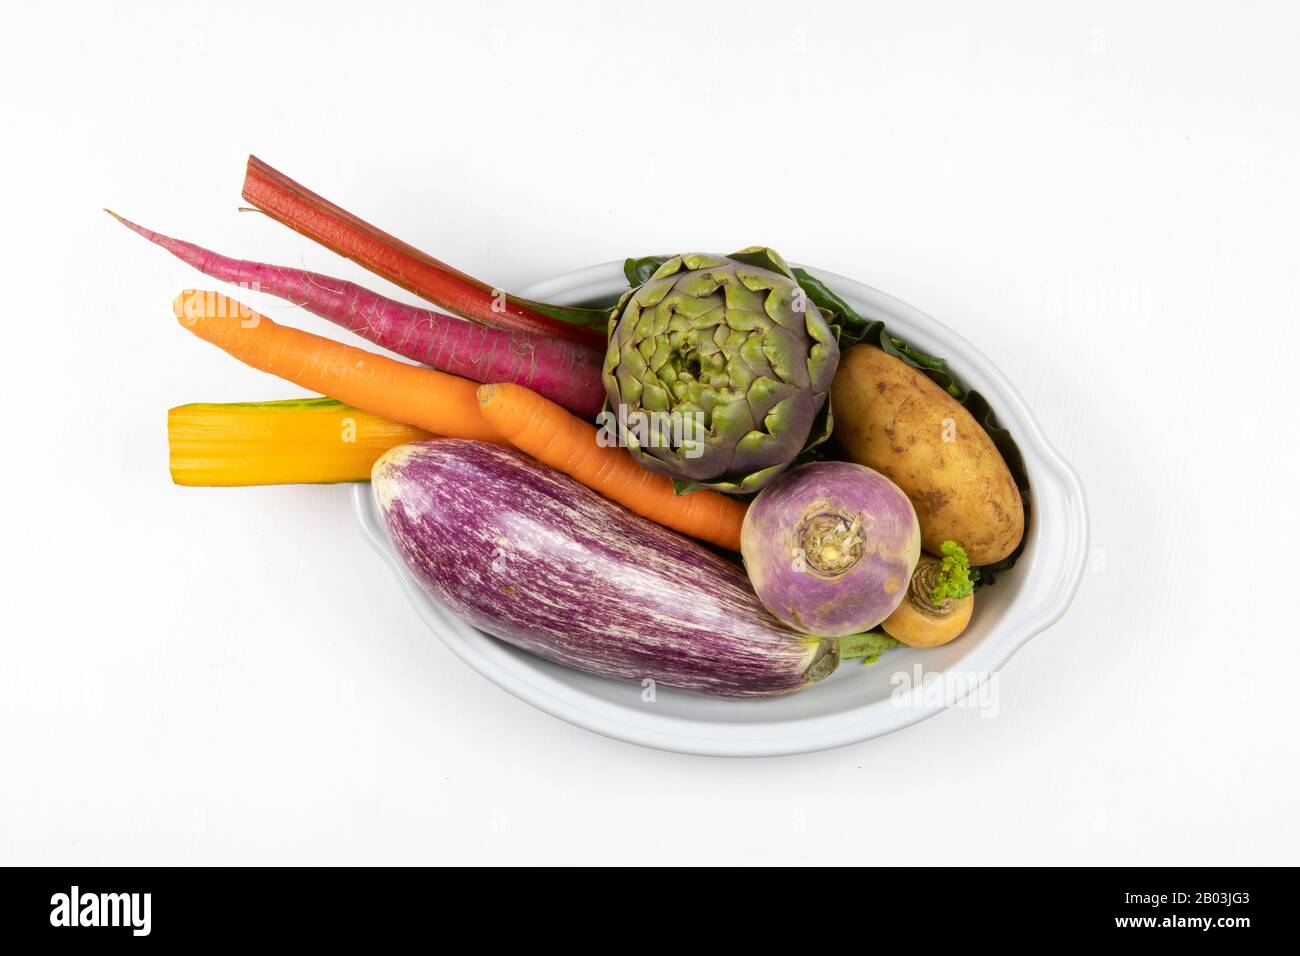 Composition de légumes violets, orange et verts dans un plat de cuisson. Aubergine, pomme de terre, artichaut, carotte, légumes crus colorés encore vie Banque D'Images